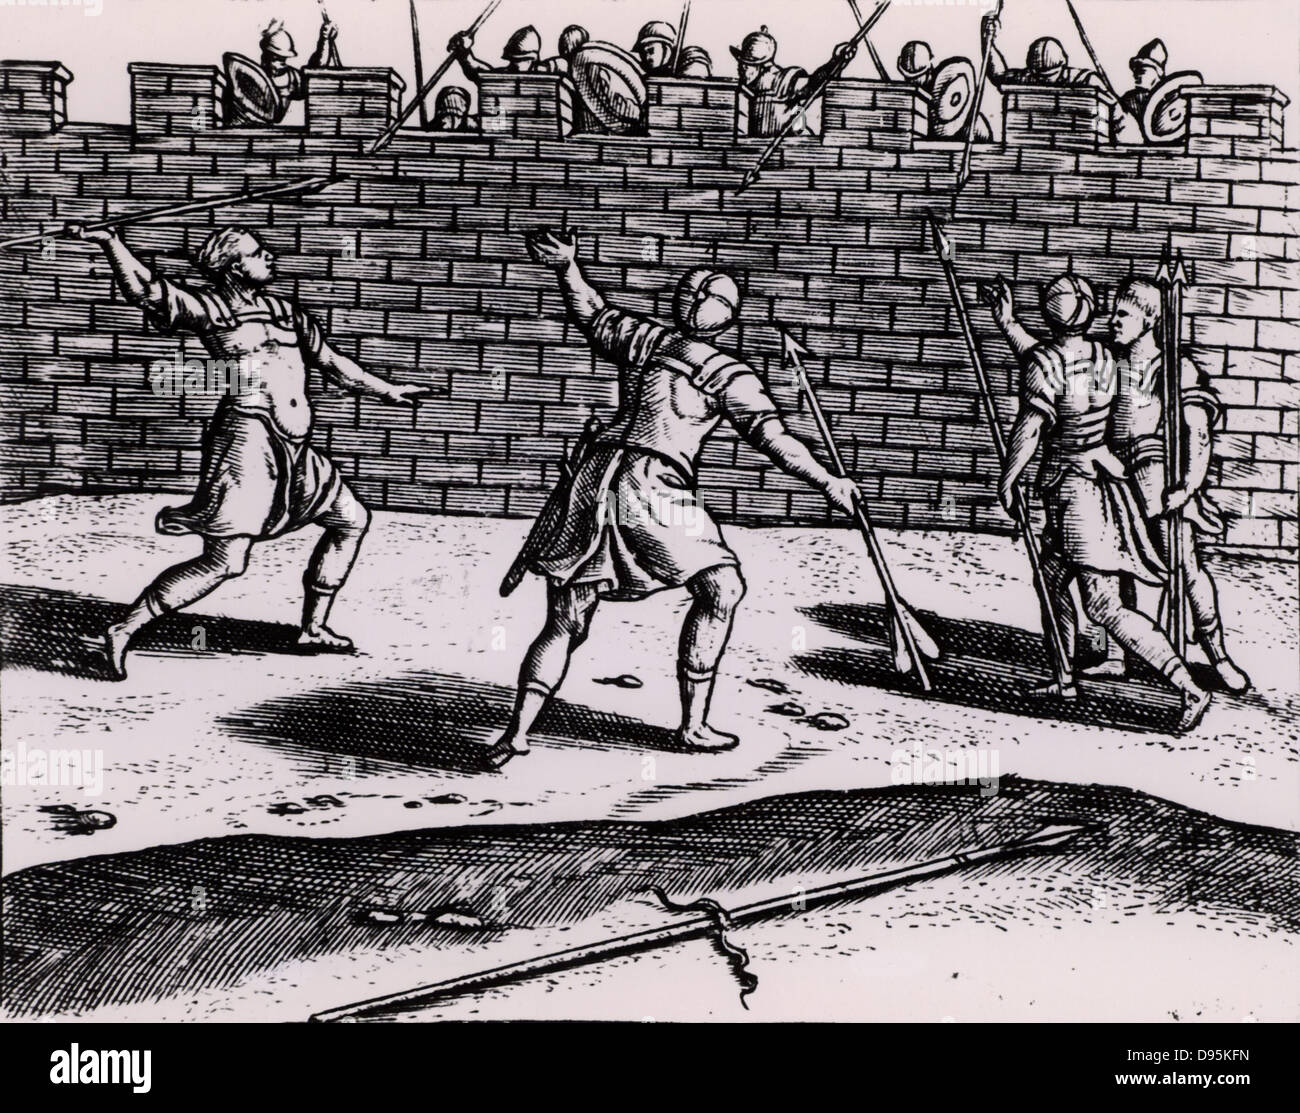 Lanciers romains d'attaquer les murs d'une forteresse assiégée. À partir de 'Poliorceticon sive de machinis tormentis telis' par Juste Lipse (Joost Lips) (Anvers, 1605). La gravure. Banque D'Images